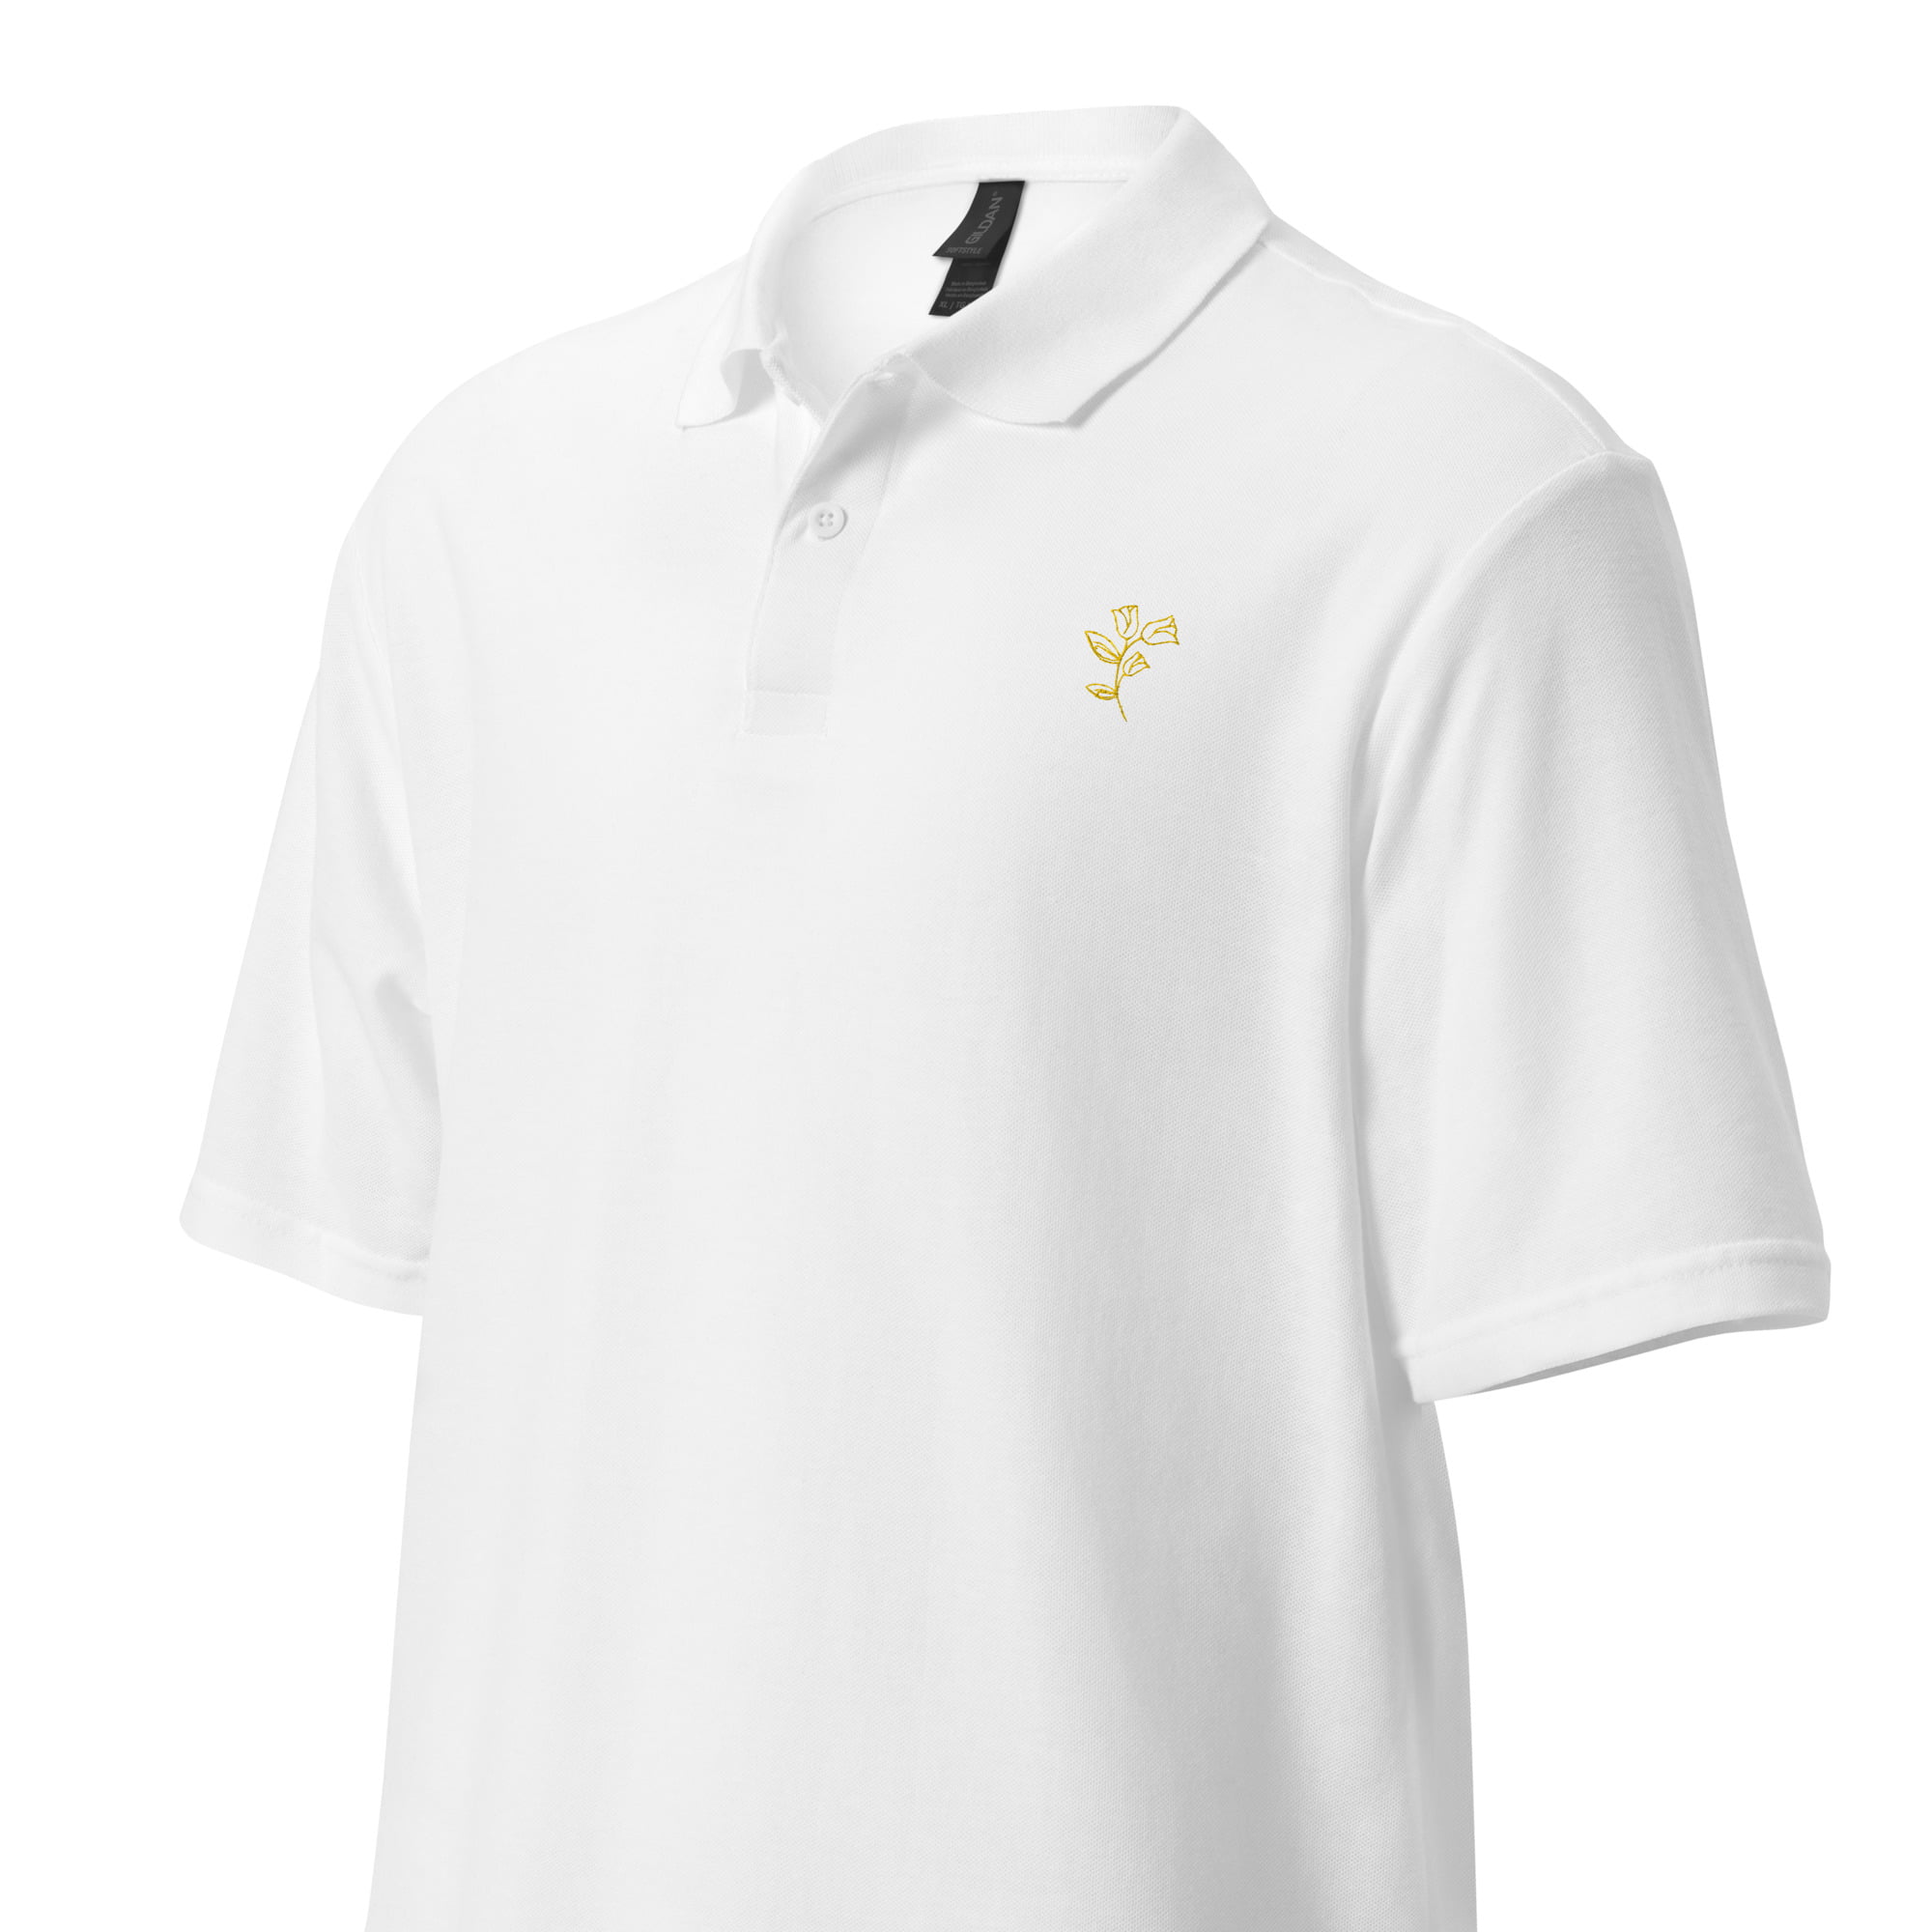 unisex pique polo shirt white left front 6475c6f81e9dc